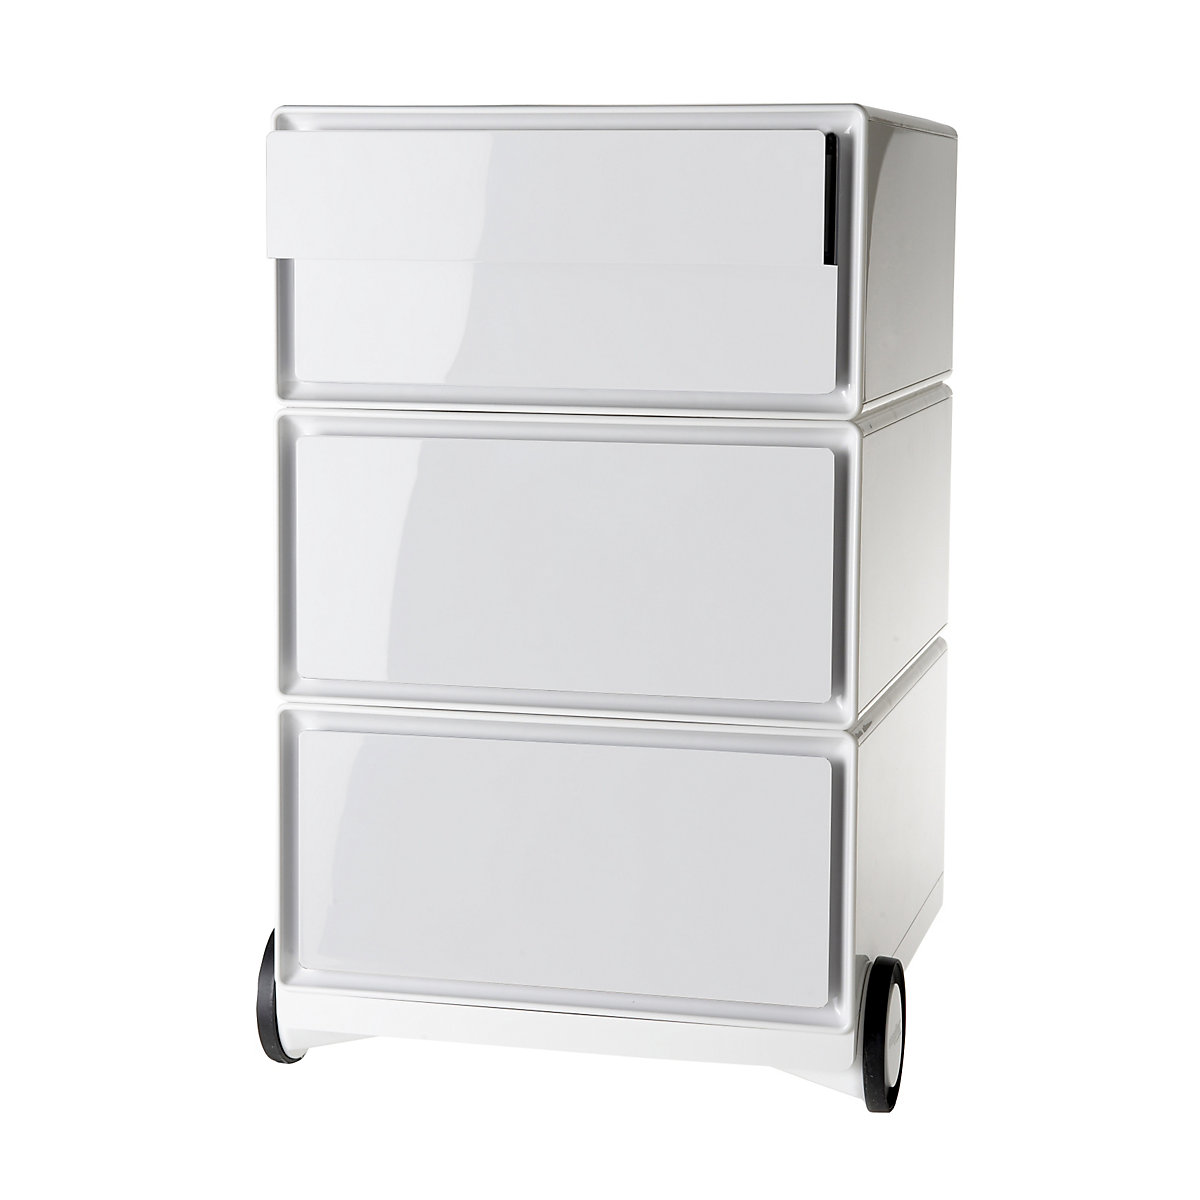 Pojízdný kontejner easyBox® – Paperflow, 2 zásuvky, 2 ploché výsuvy, bílá / bílá-15